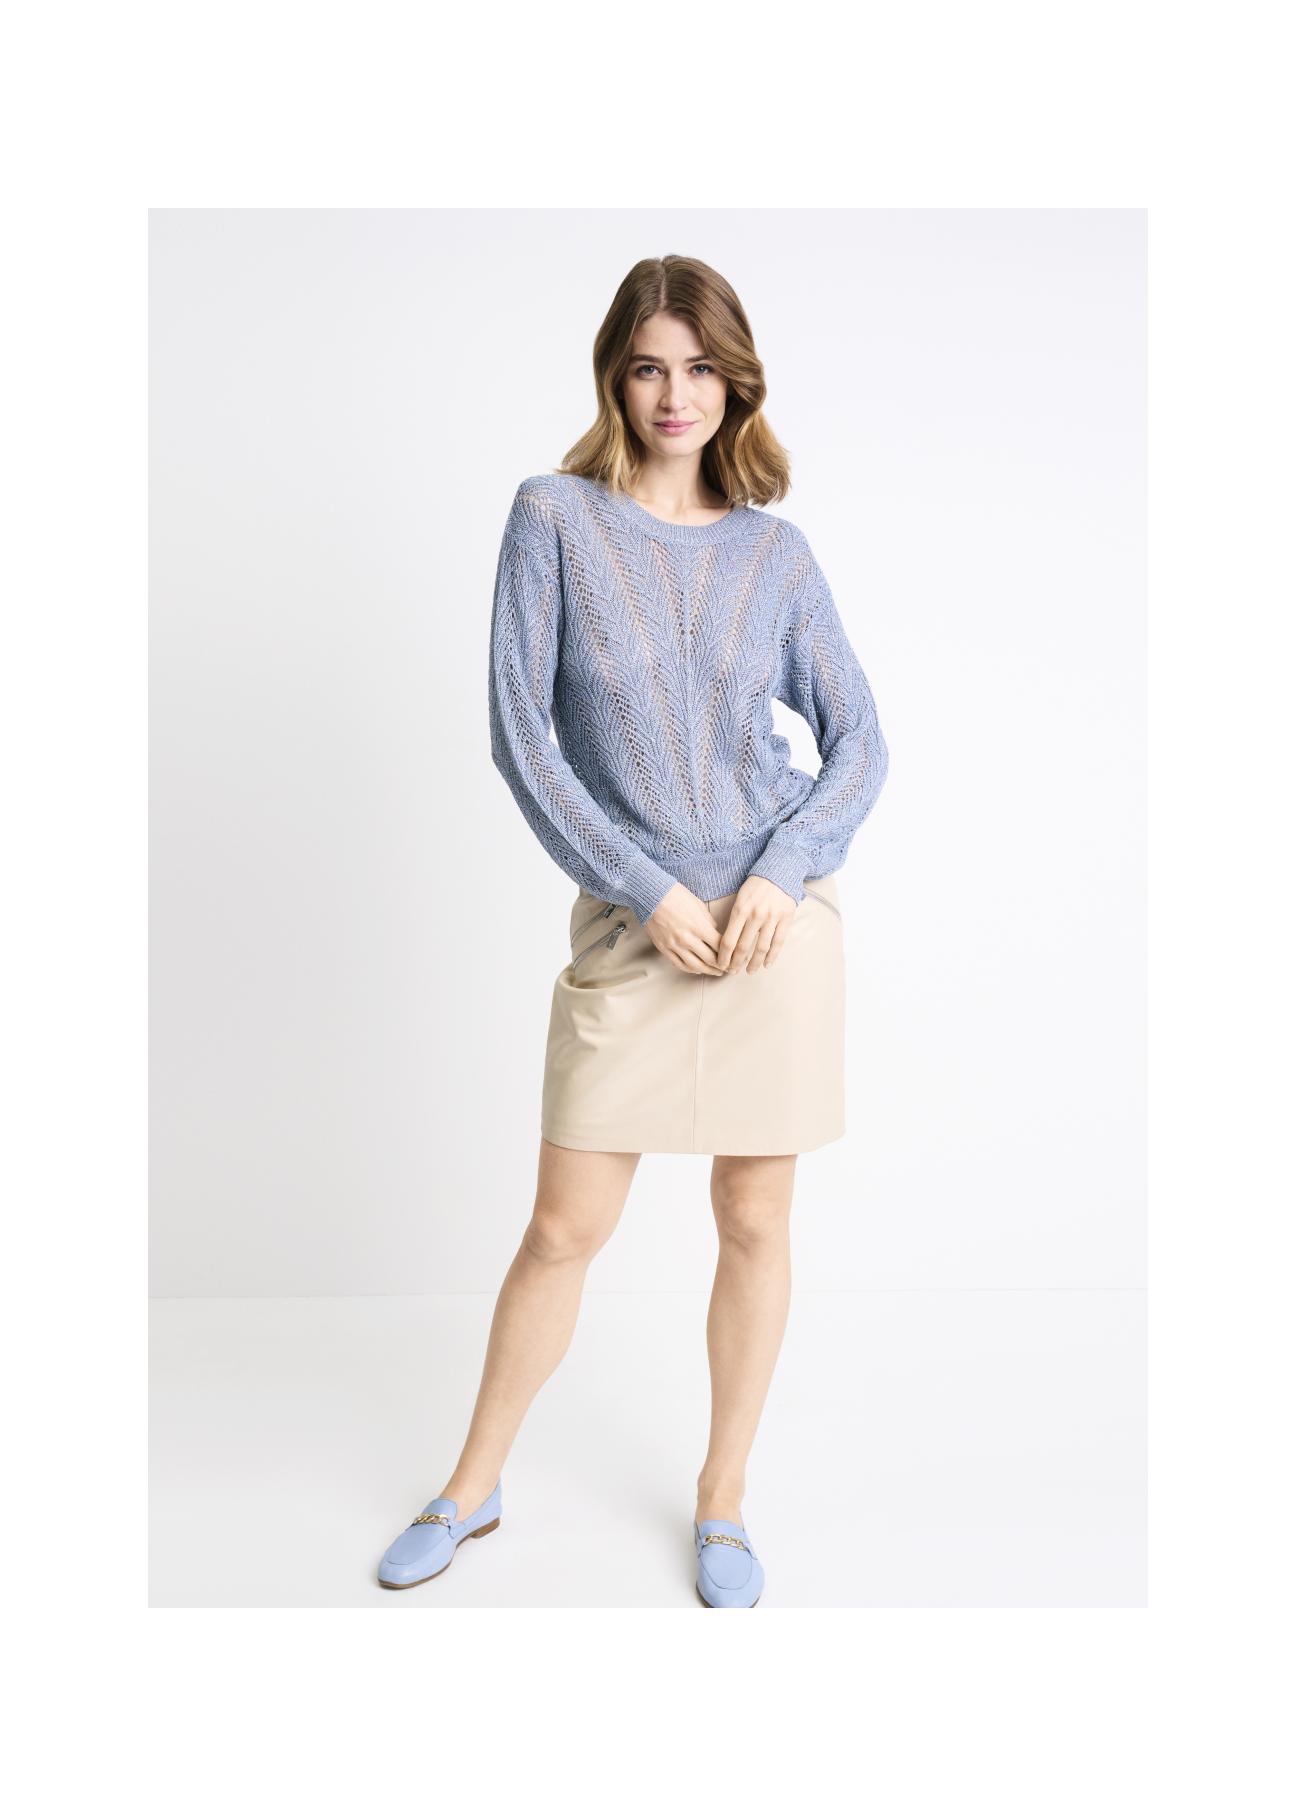 Niebieski ażurowy sweter damski SWEDT-0159-61(W22)